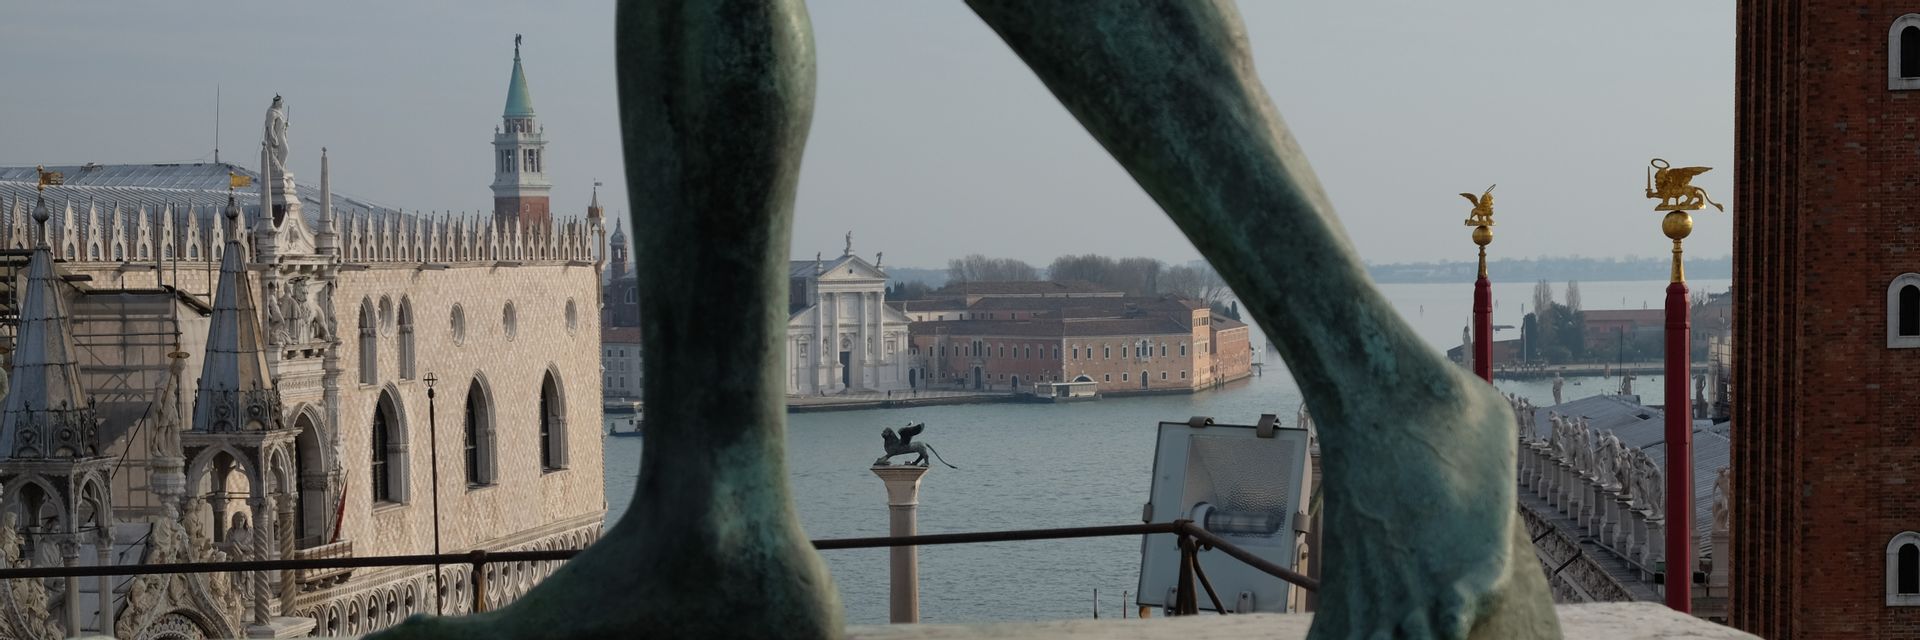 Torre dell'orologio di Venezia